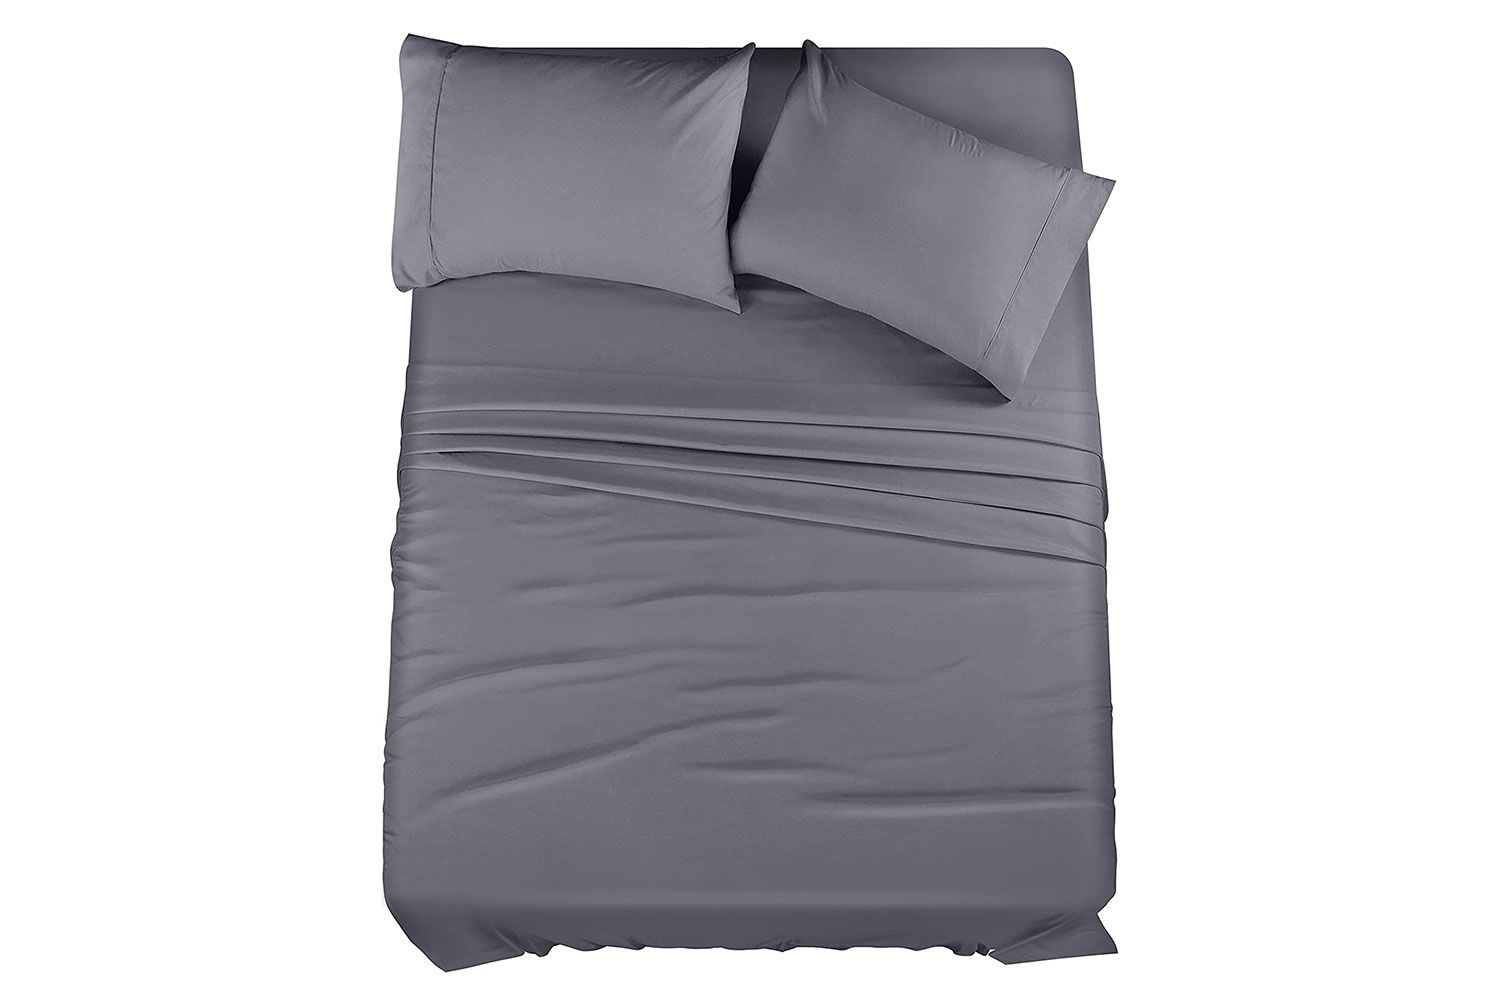 Amazon Utopia Bedding Queen Bed Sheets Set Grey